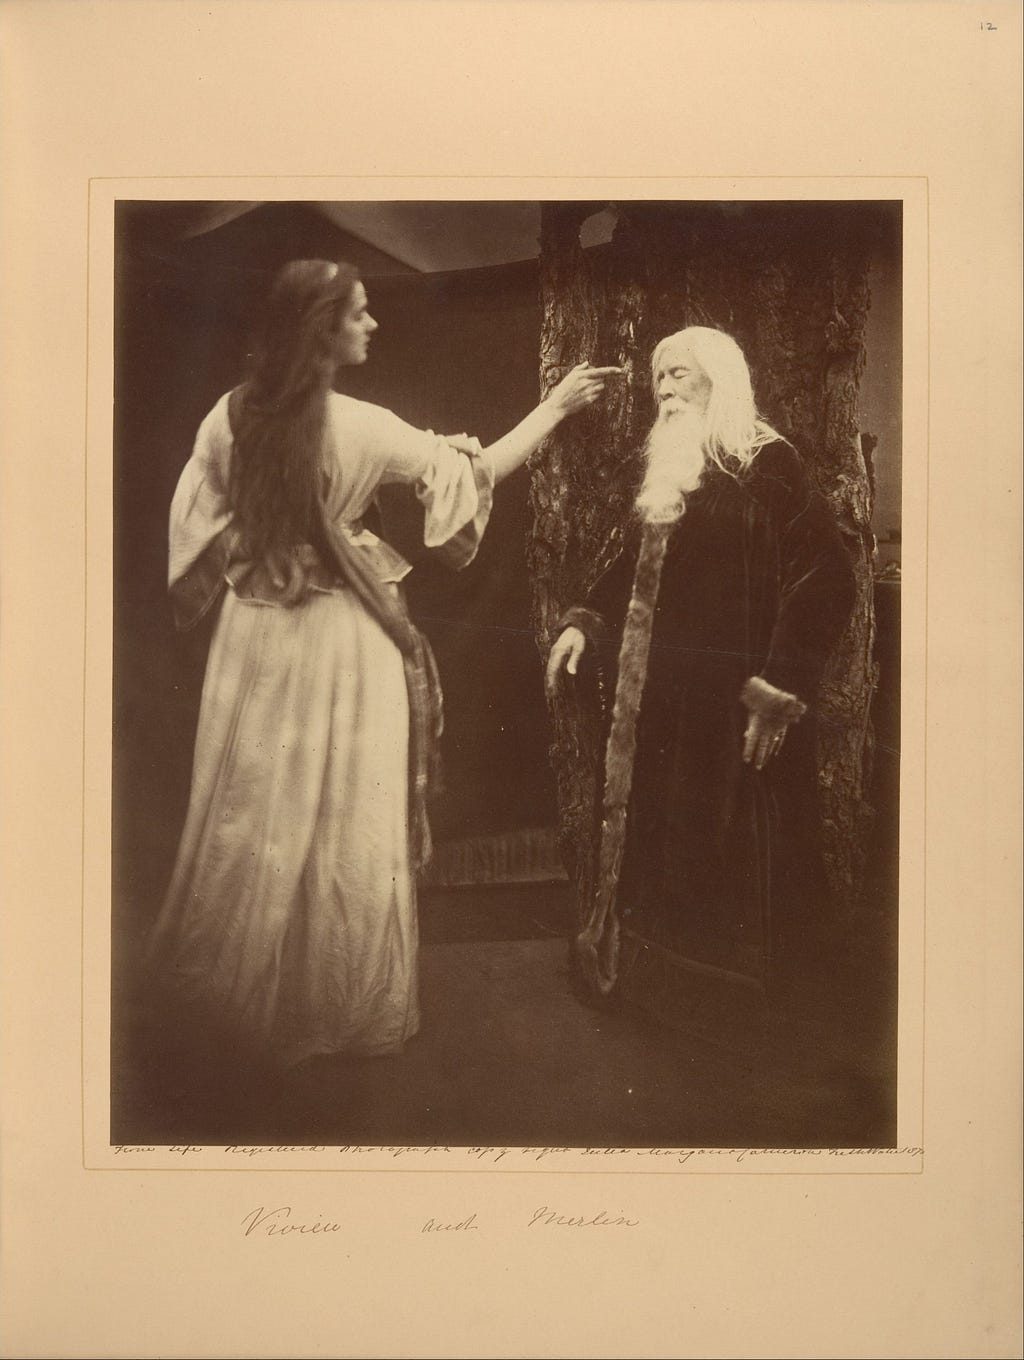 ‘Vivien and Merlin’ (1874), Julia Margaret Cameron | The Metropolitan Museum of Art